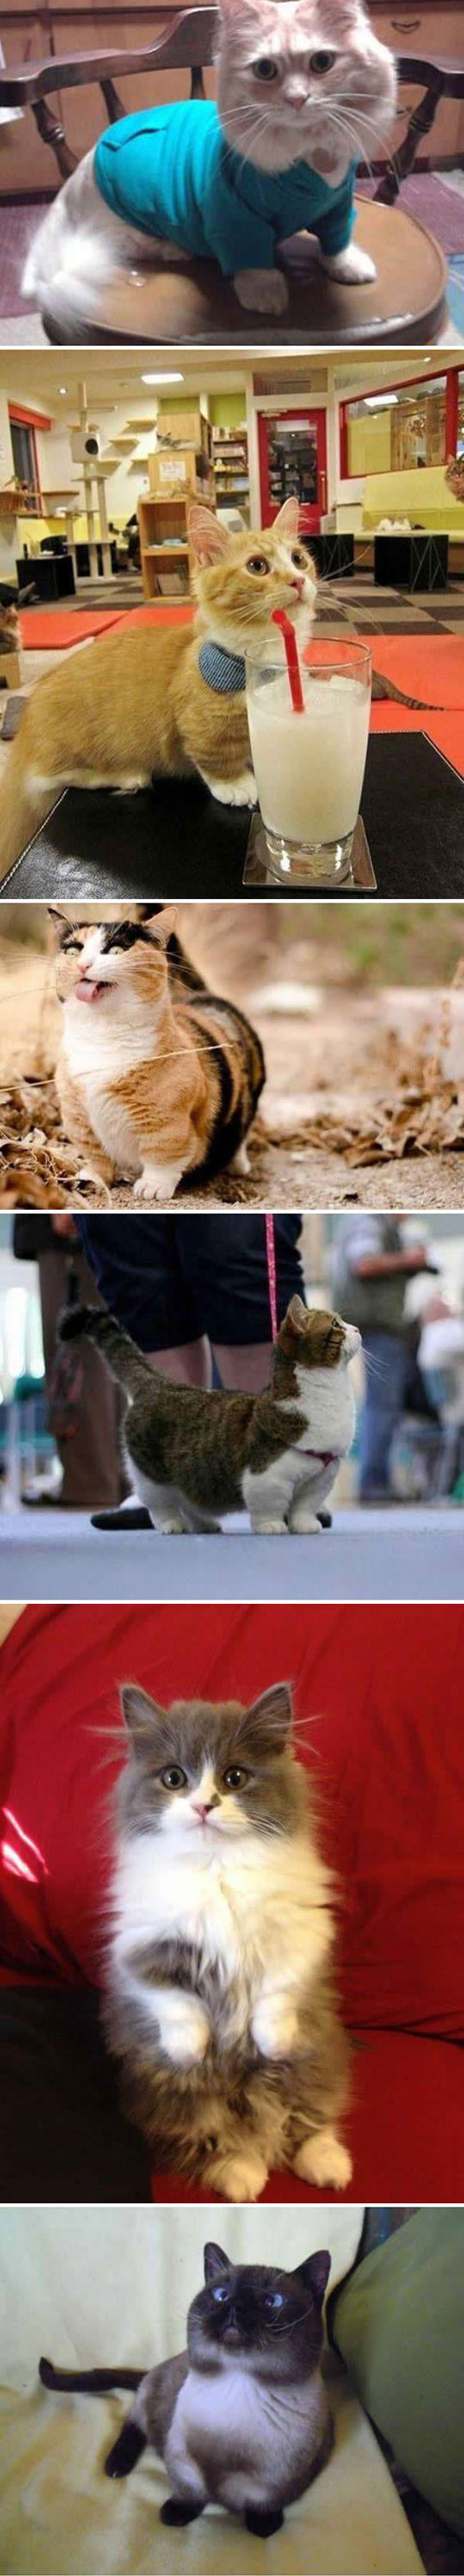 2-funny-cute-cats-short-legs